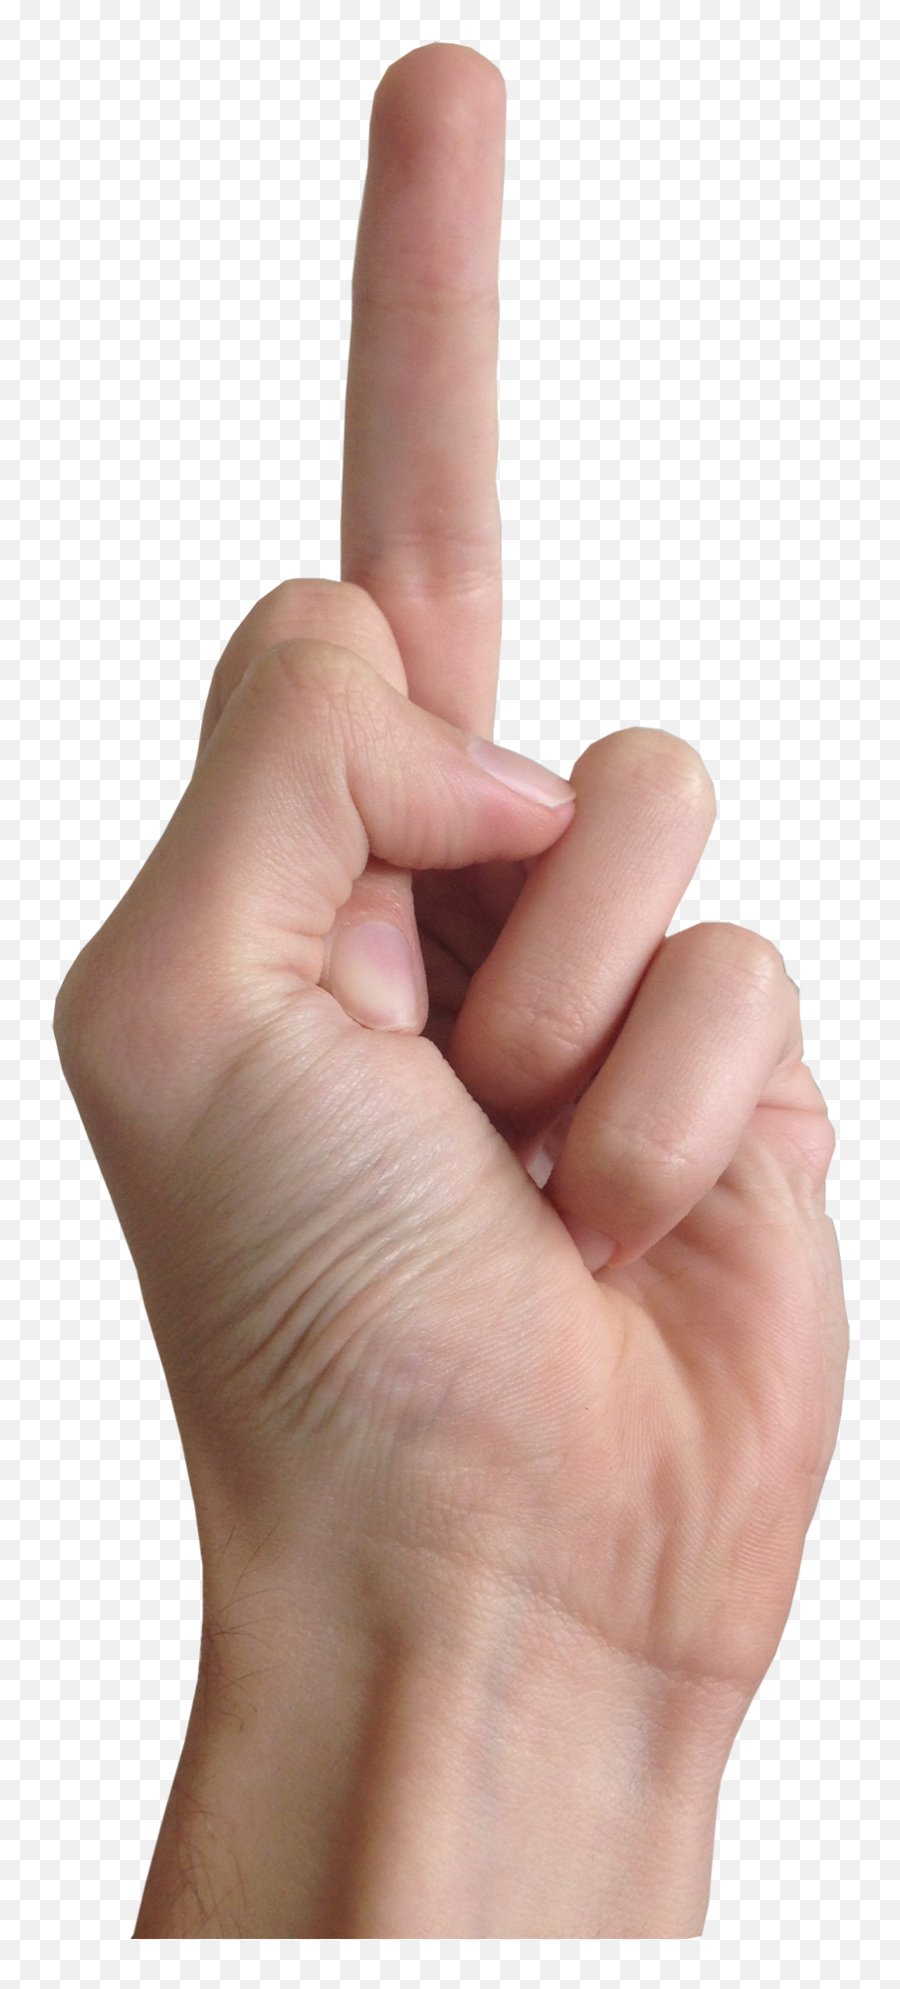 Free Middle Finger Png Download Free Clip Art Free Clip - Middle Finger Transparent Emoji,Crossing Fingers Emoji